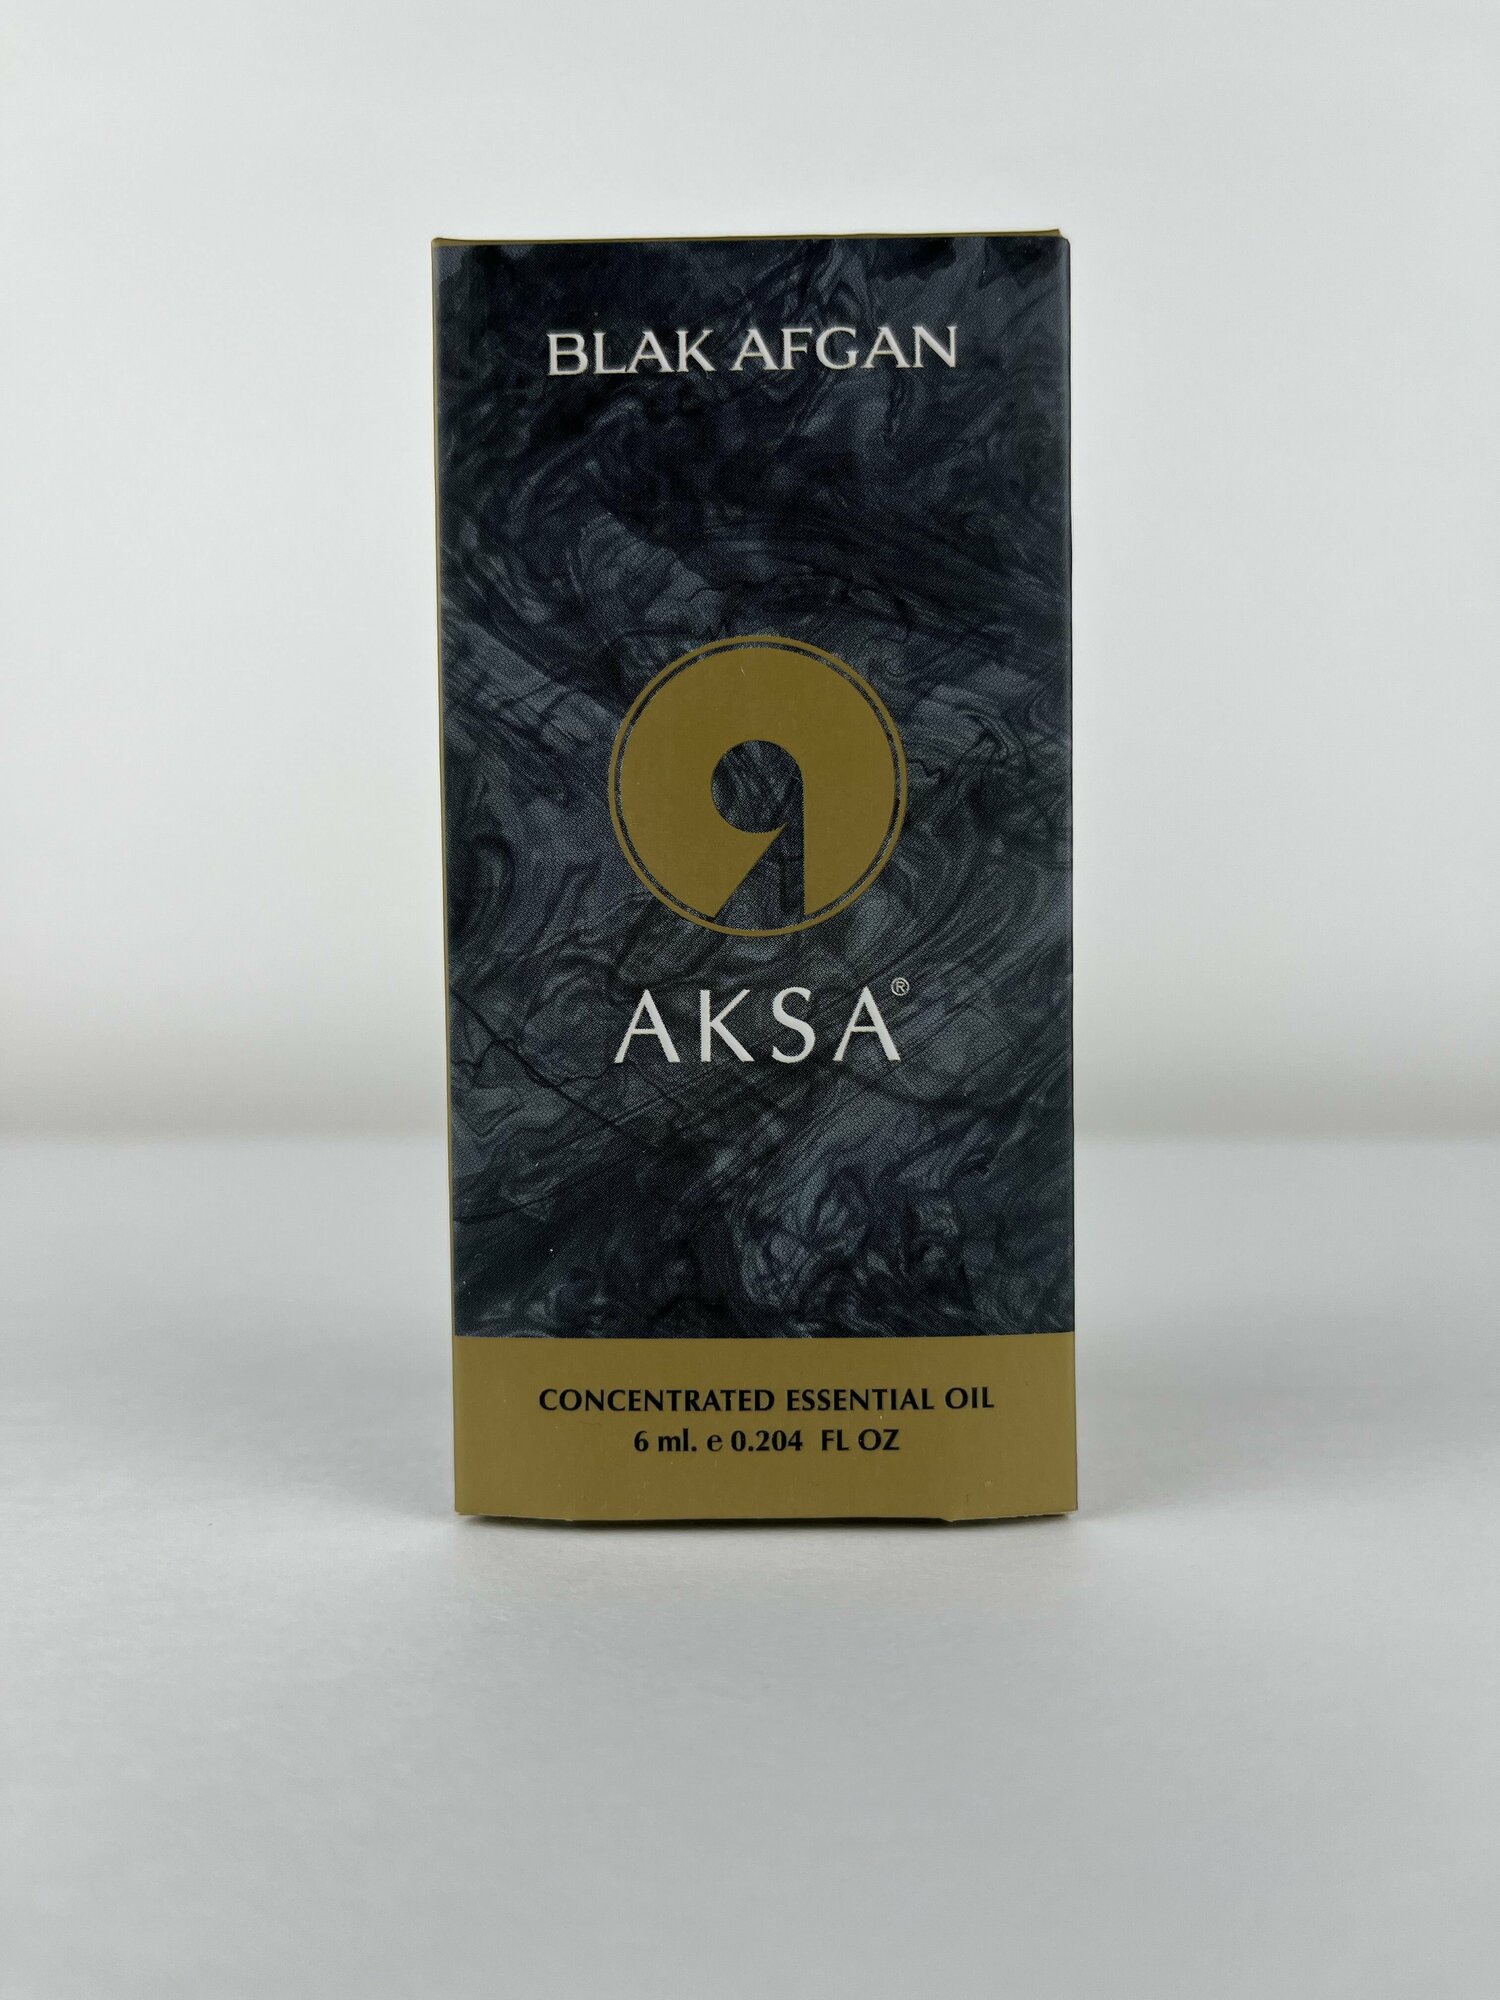 Духи мужские масляные AKSA ESANS BLACK AFGAN / Акса Эсанс, мужской аромат, древесный, духи унисекс, парфюм, 6мл